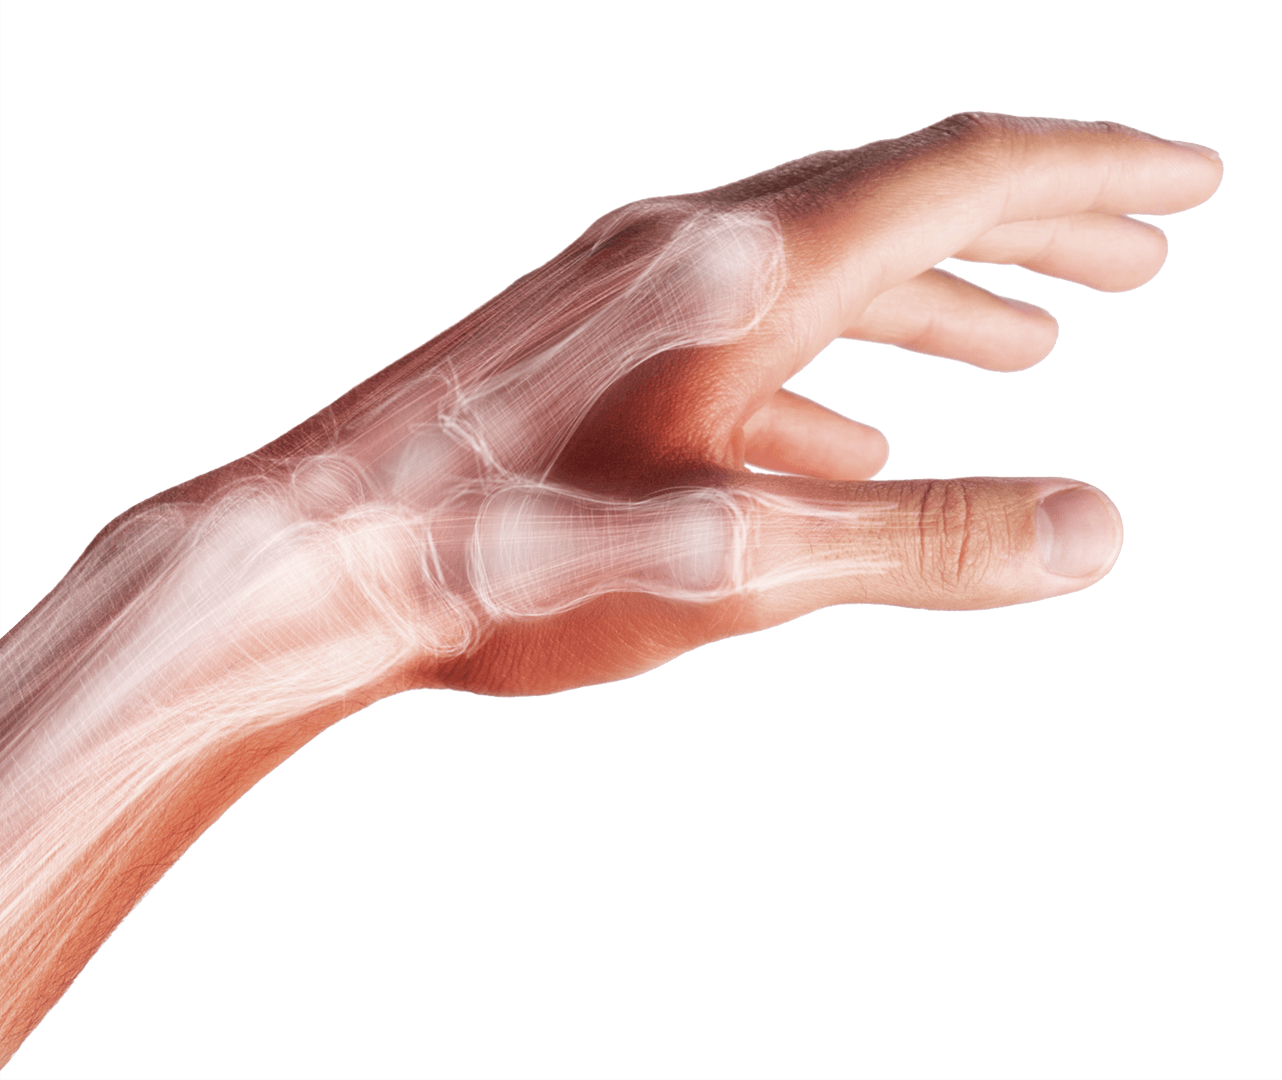 Douleur de la main et des doigts : que faire ?